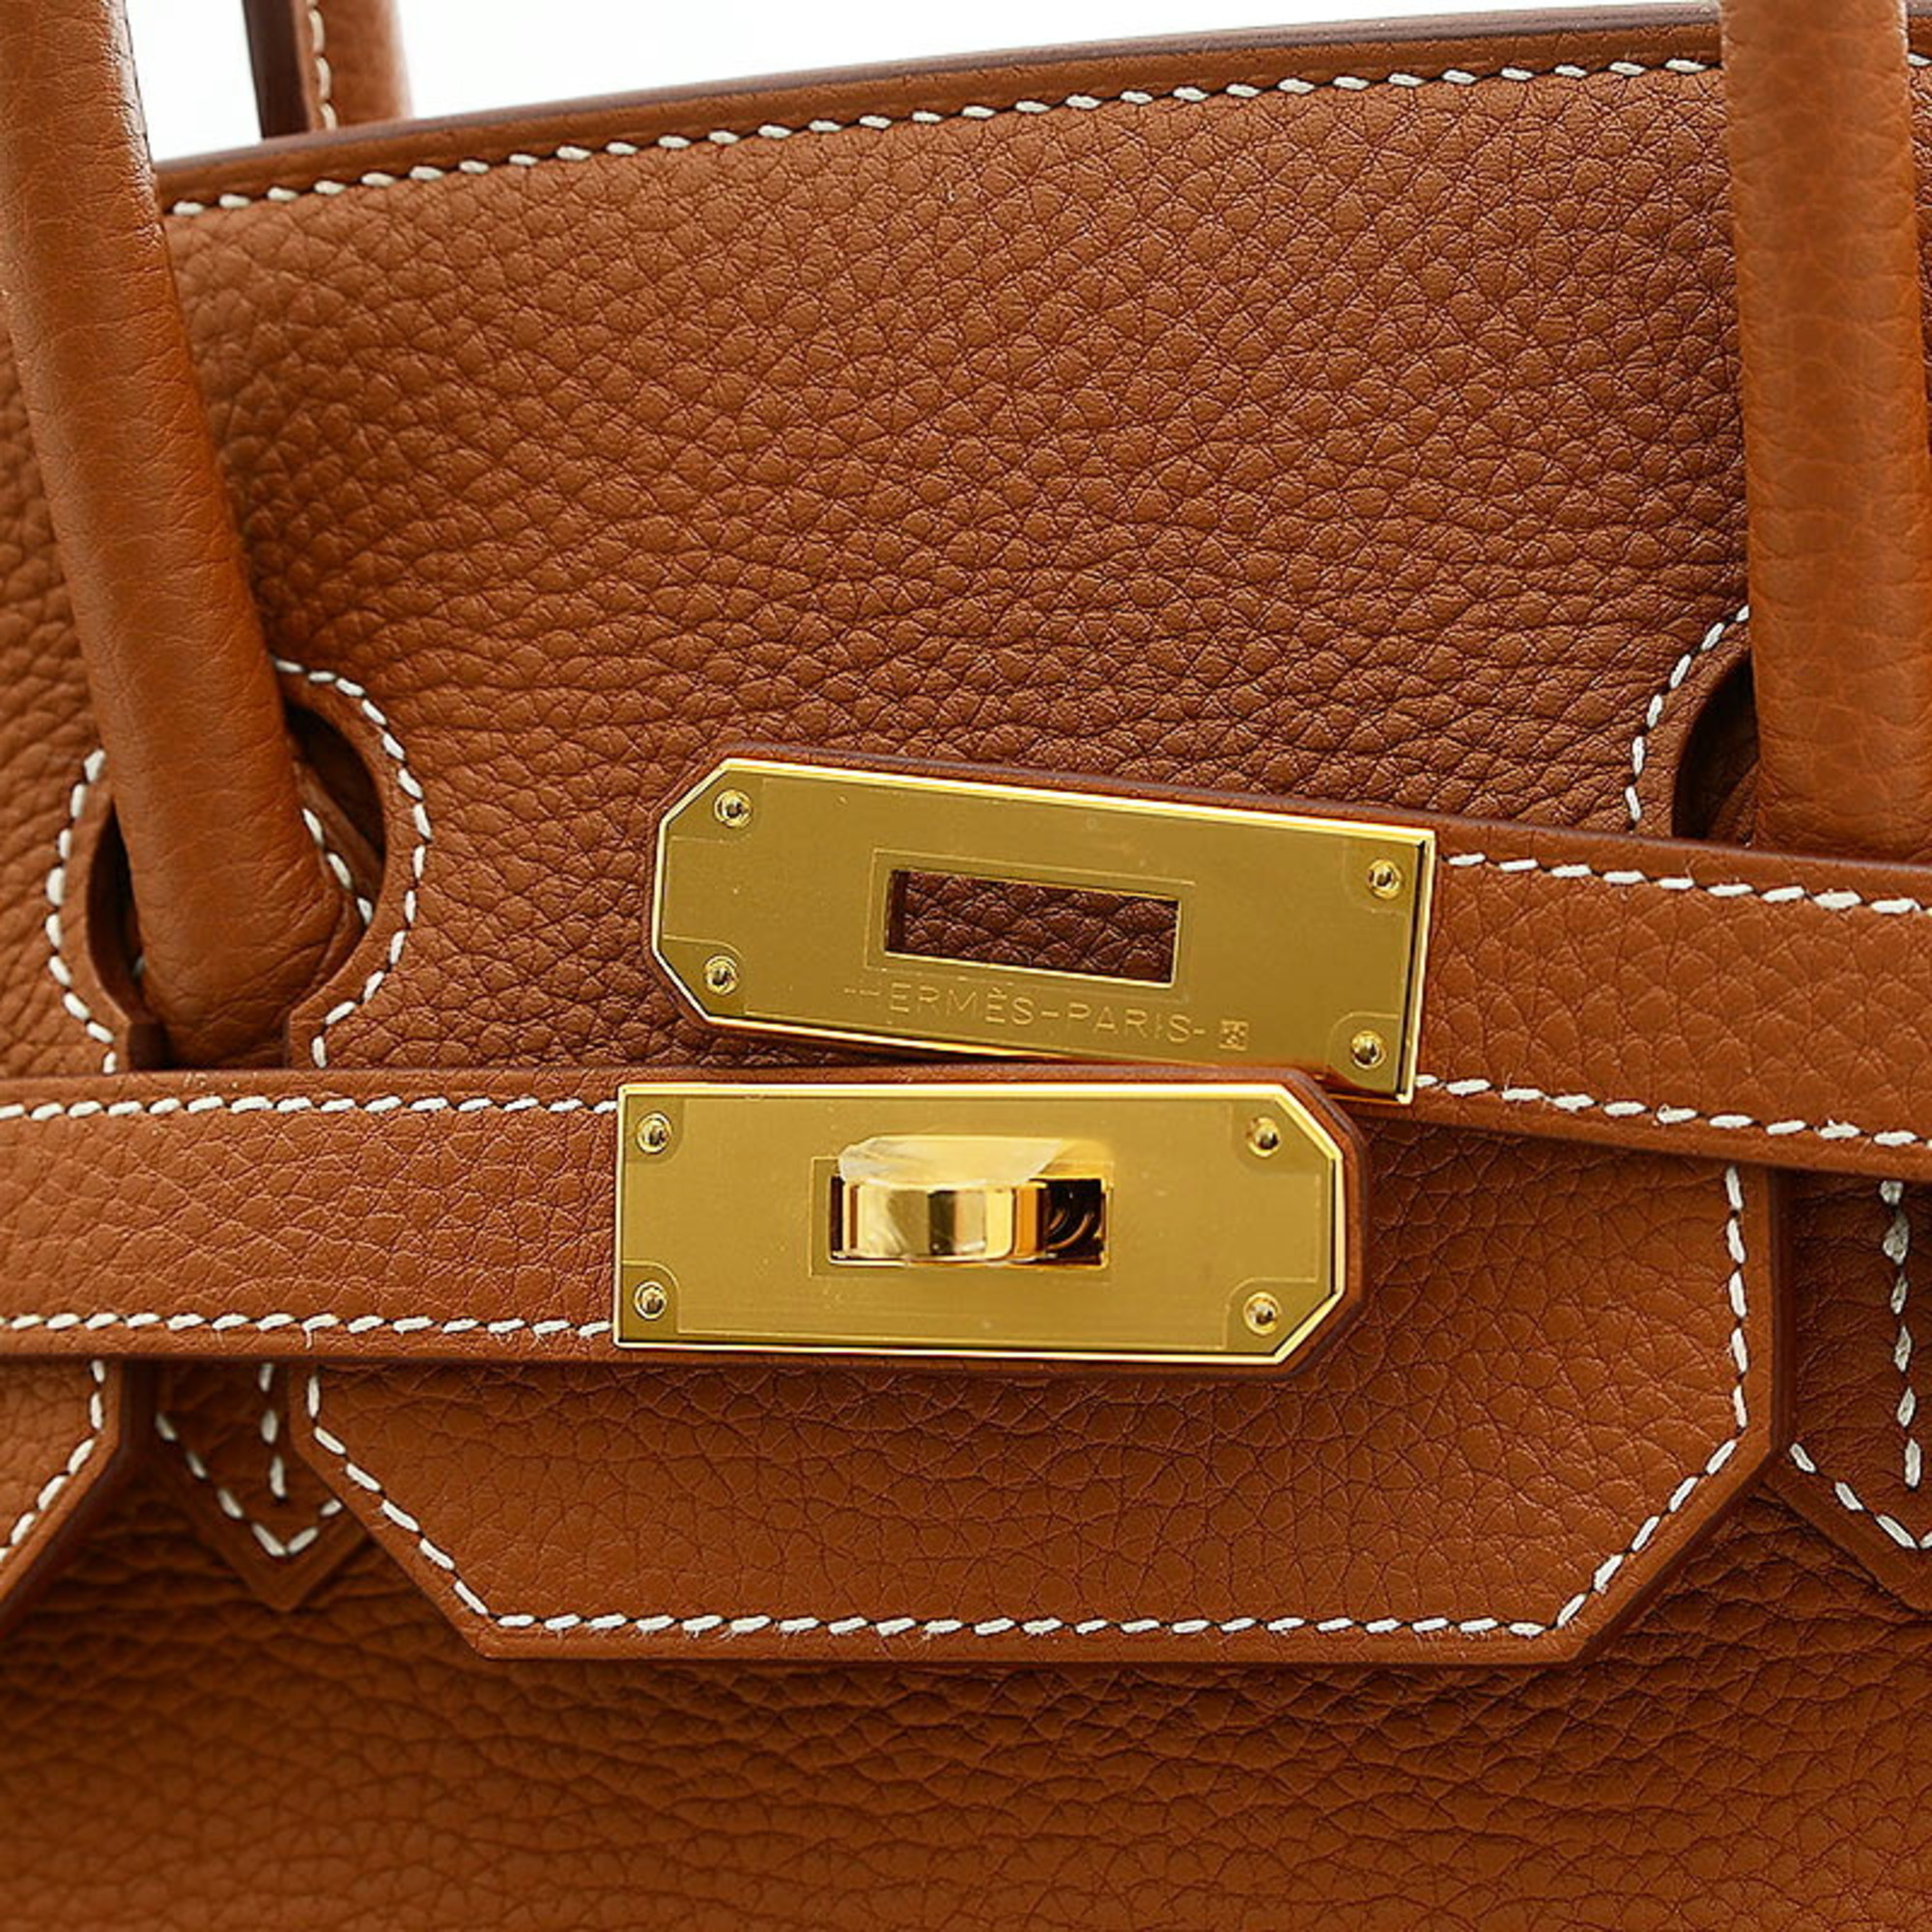 Hermes Birkin 35 Handbag Togo Gold W Engraved